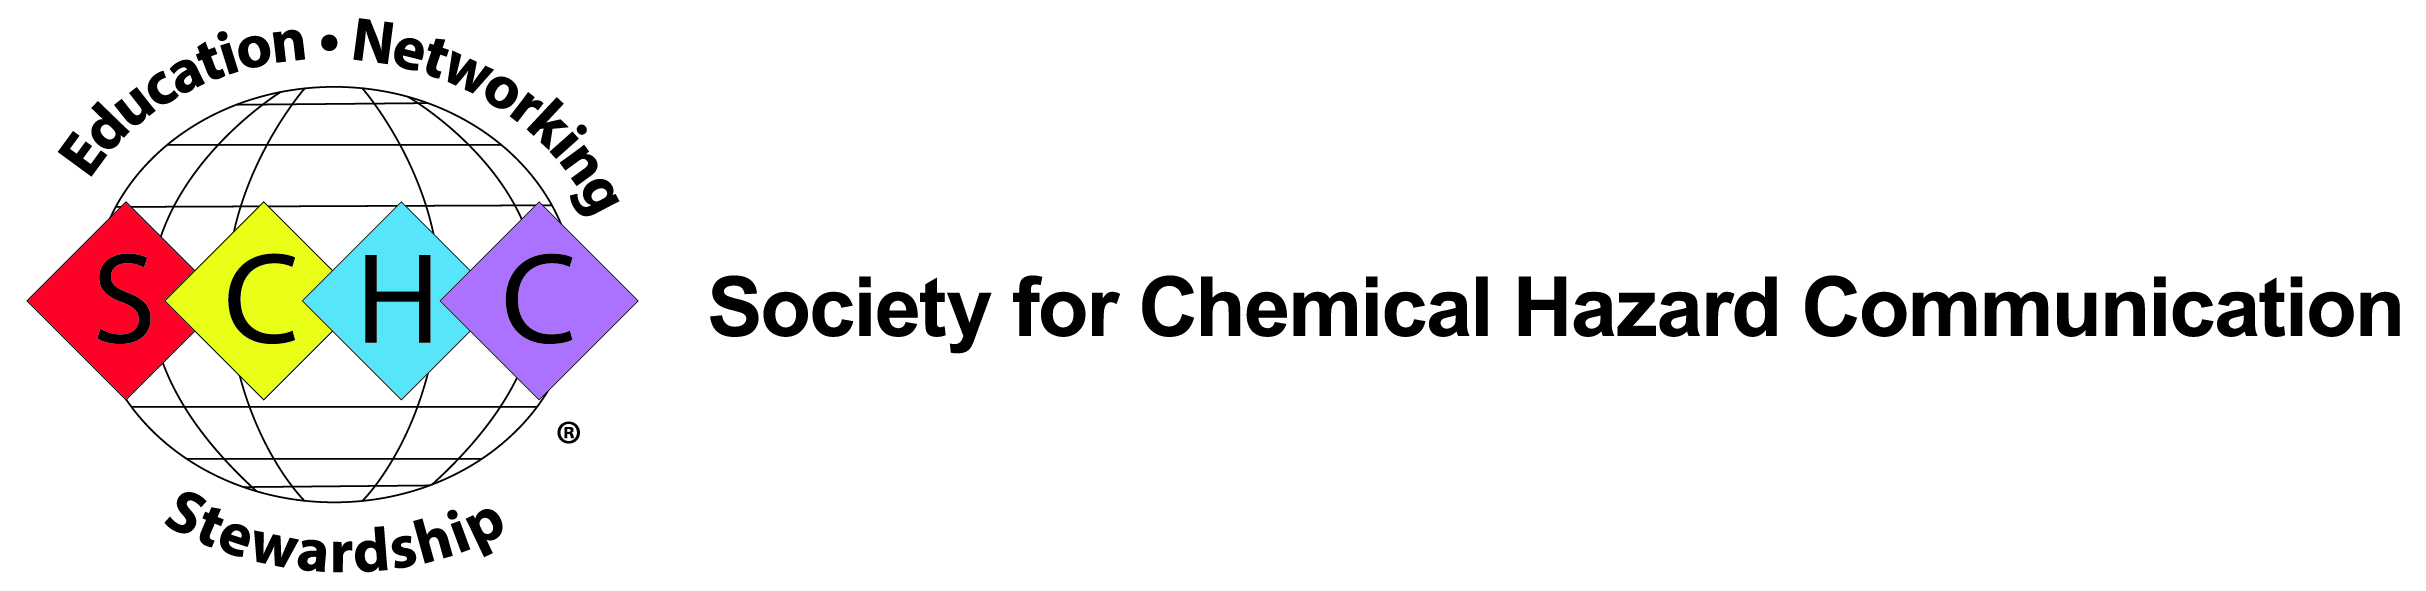 SCHC | Chemical Hazard Communication Organization